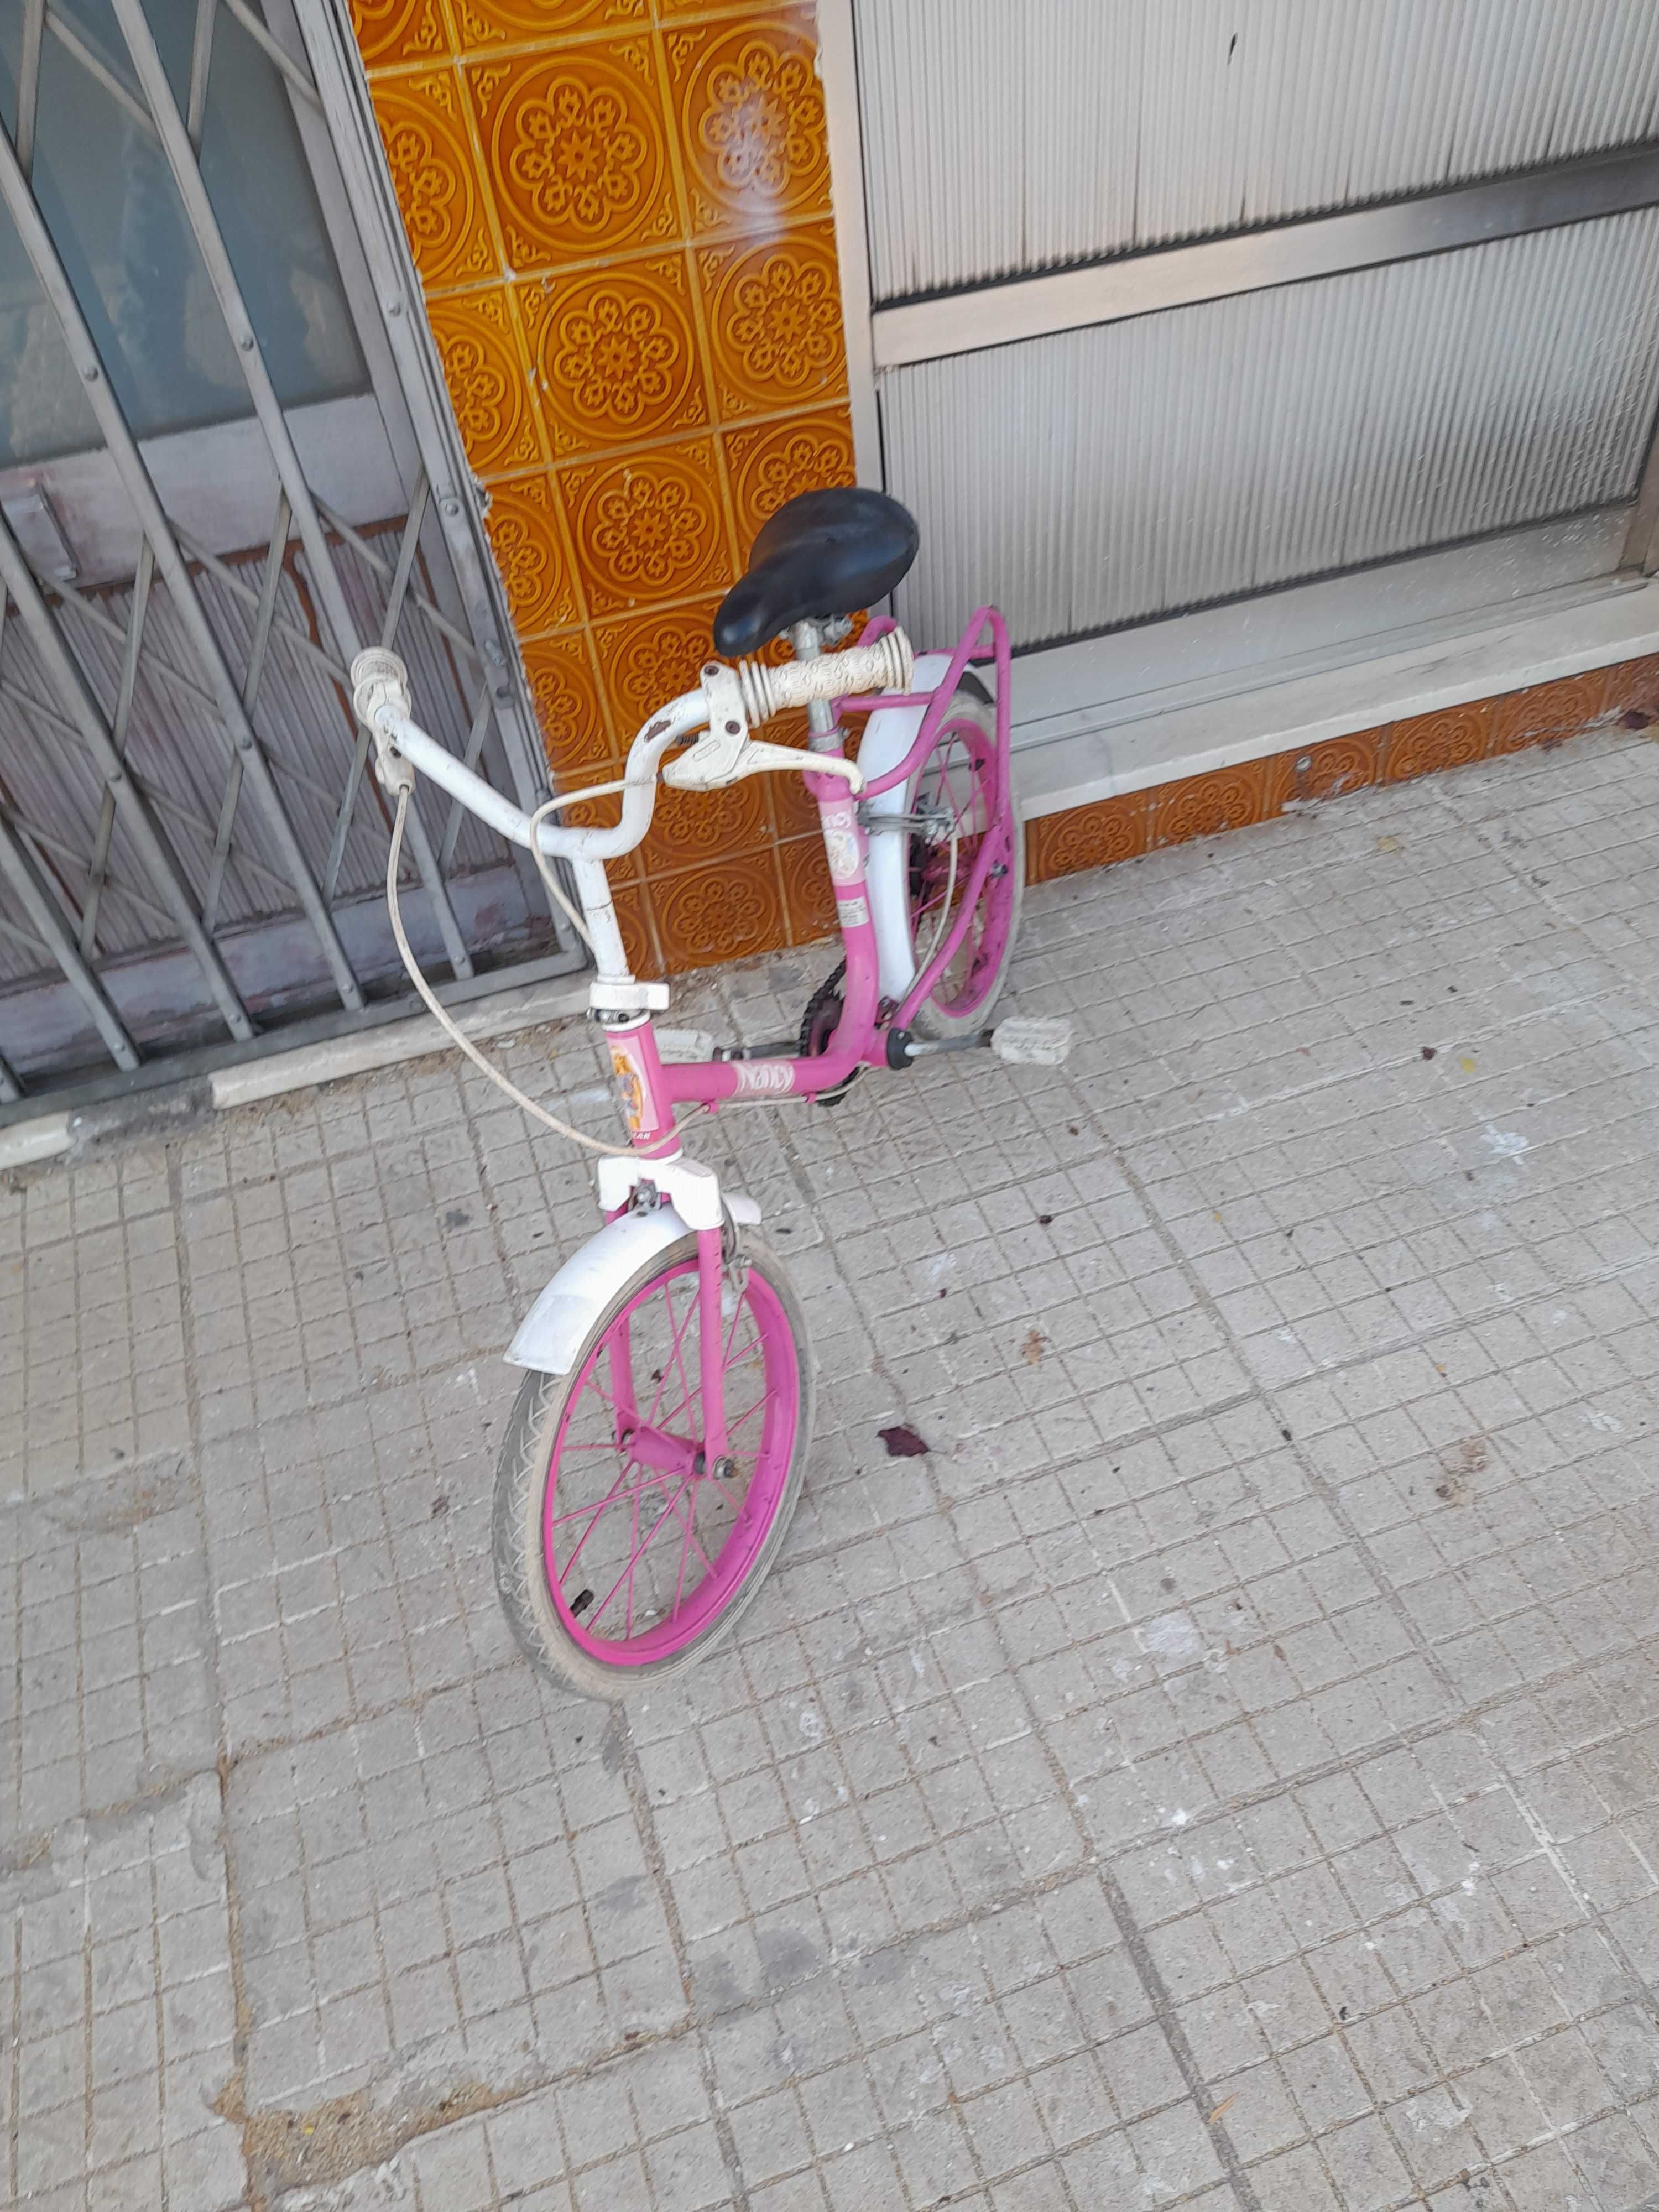 Bicicleta de menina roda 14 Nancy